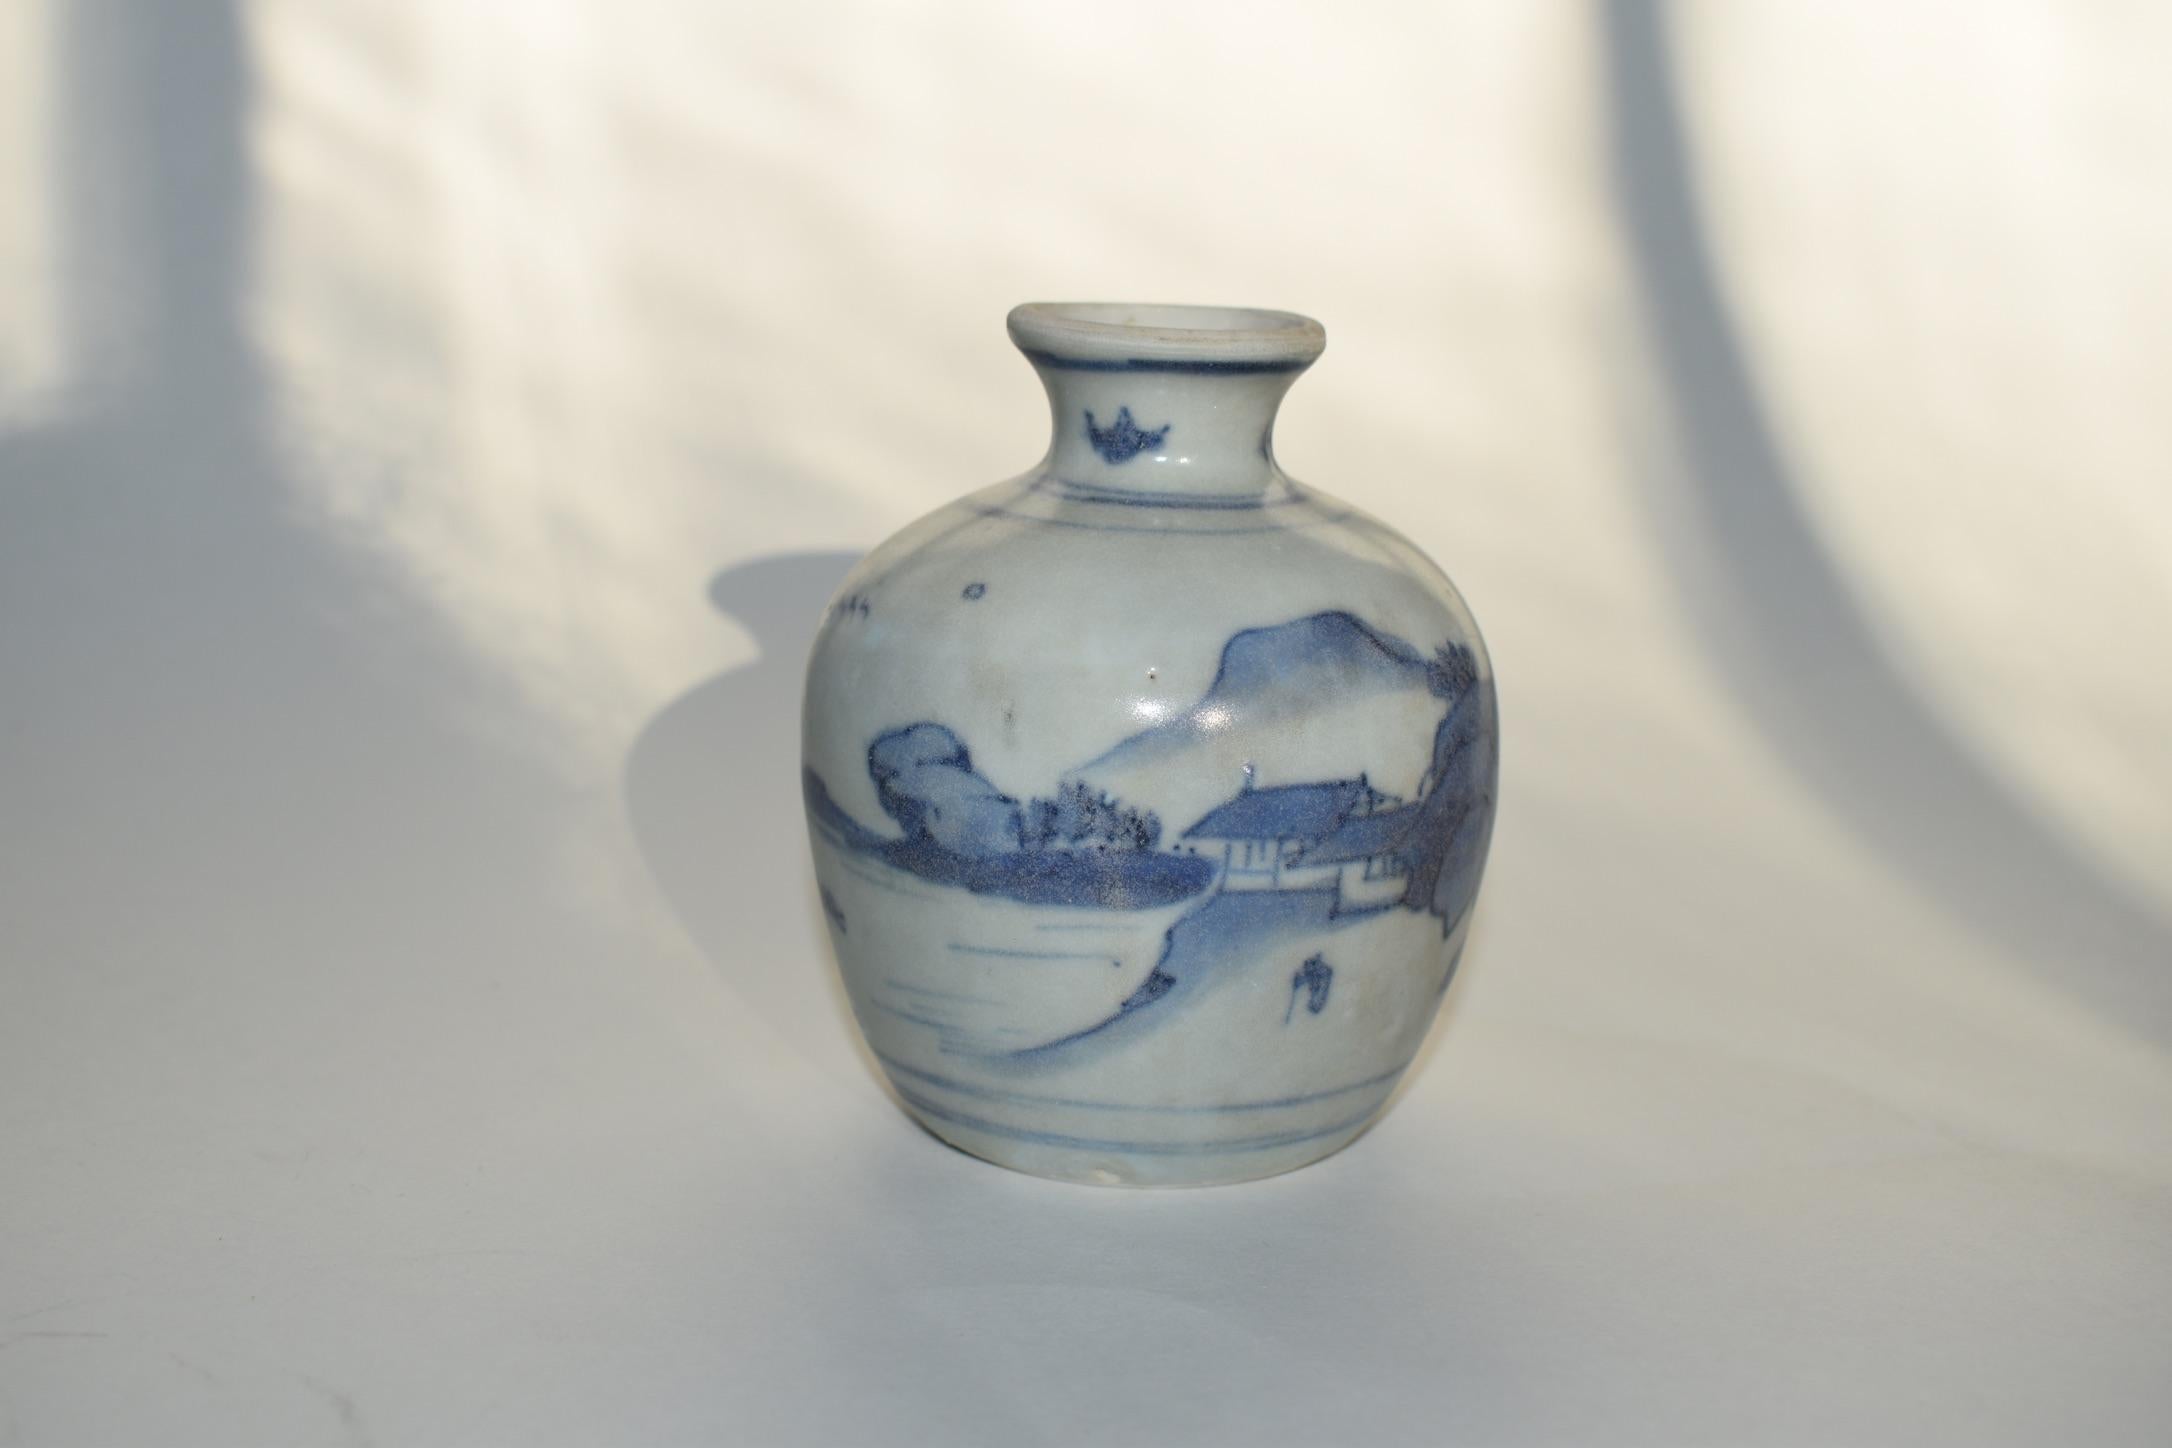 Paire de petites jarres en porcelaine bleue et blanche du XVIIe siècle provenant de la collection Hatcher. 
Ces jarres faisaient partie d'un magot récupéré par le capitaine Michael Hatcher dans l'épave d'un navire coulé en mer de Chine méridionale